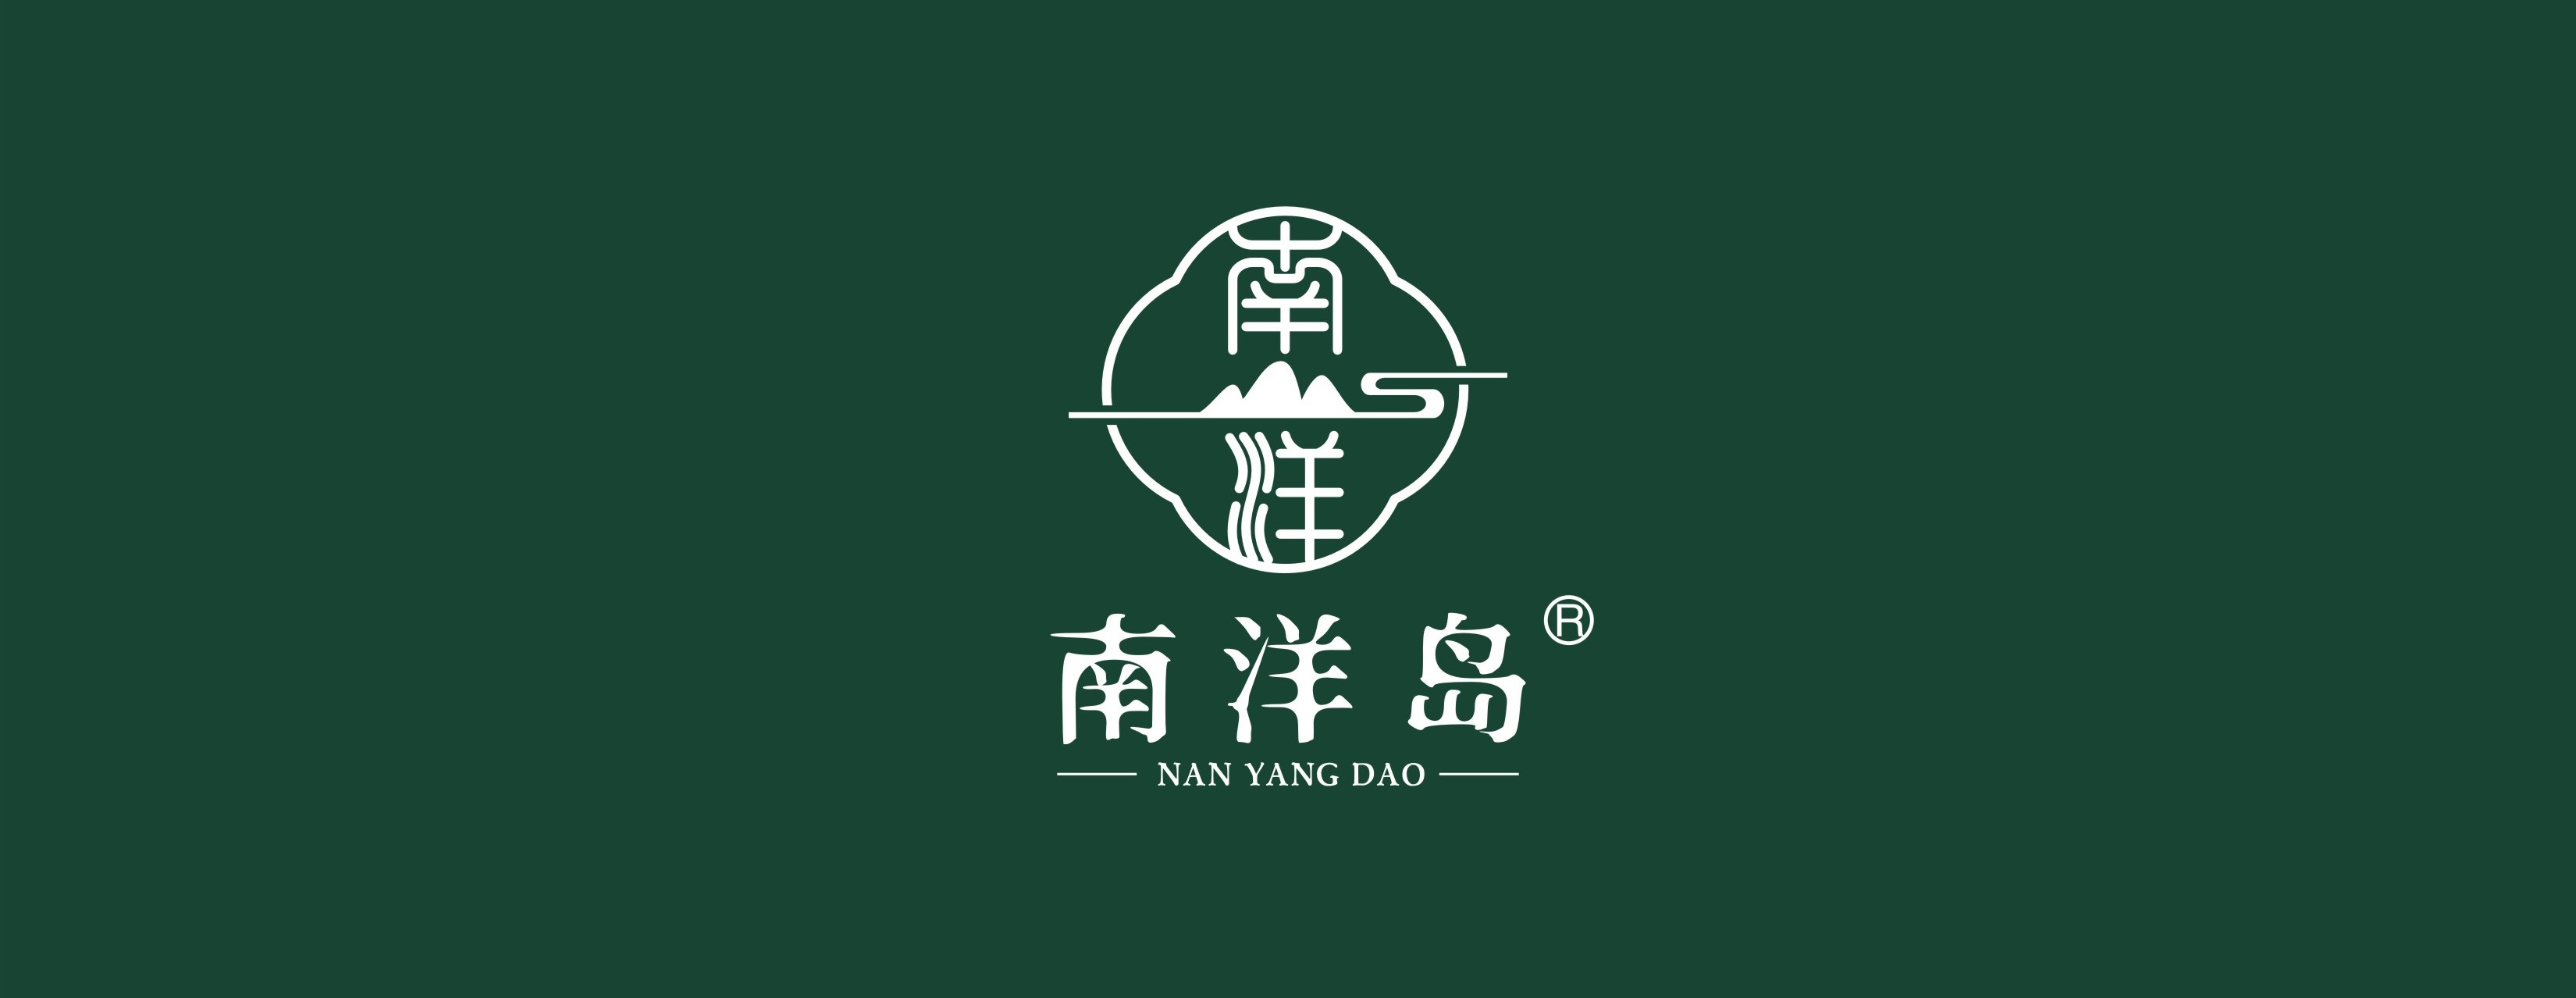 Nan Yang Dao Logo - Latest Green Base (R).jpg